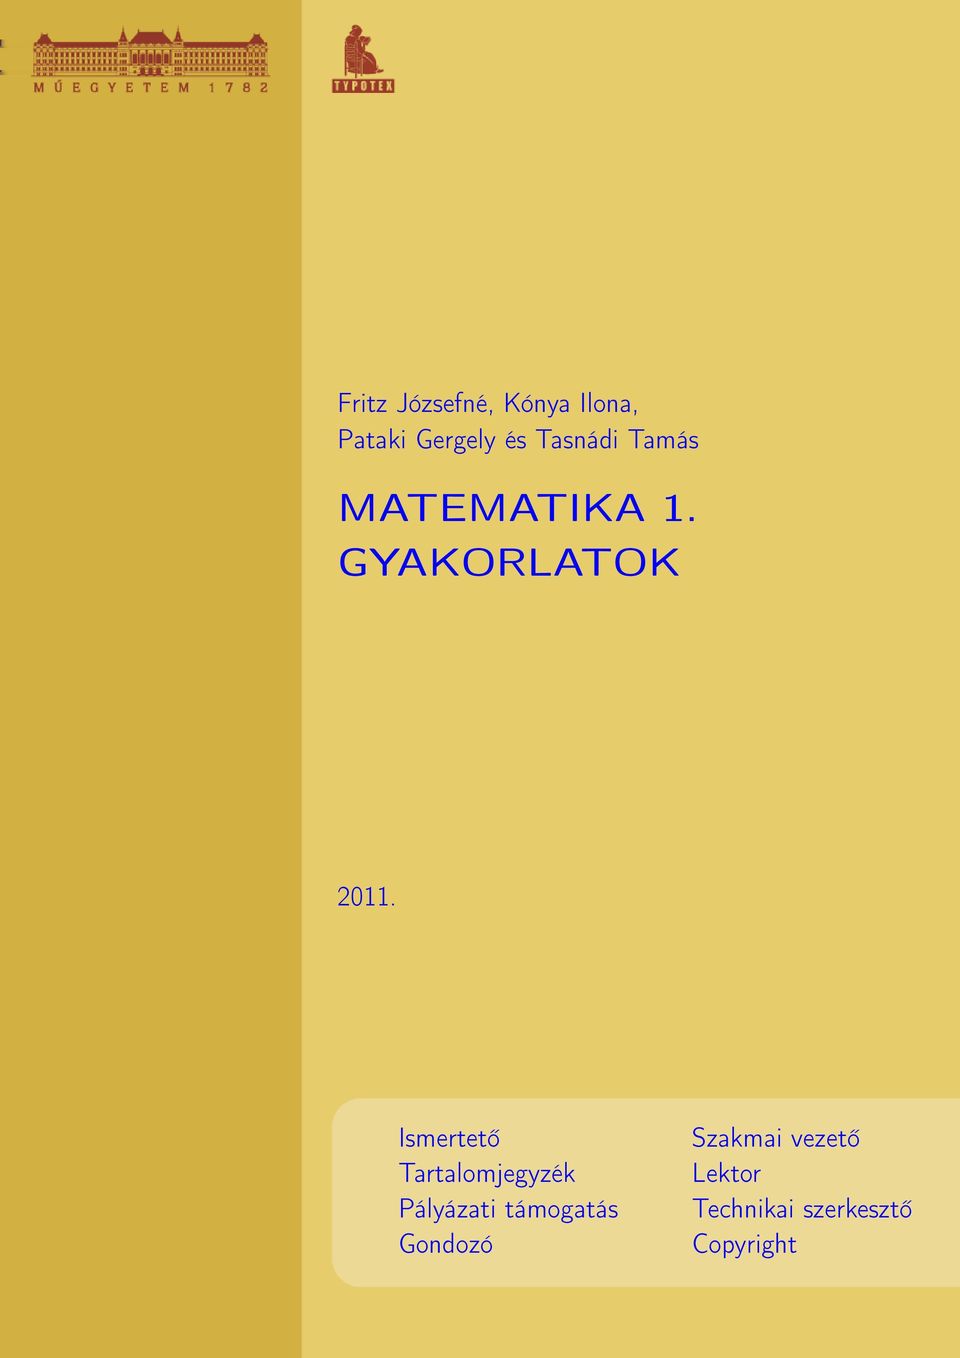 MATEMATIKA 1. GYAKORLATOK - PDF Ingyenes letöltés